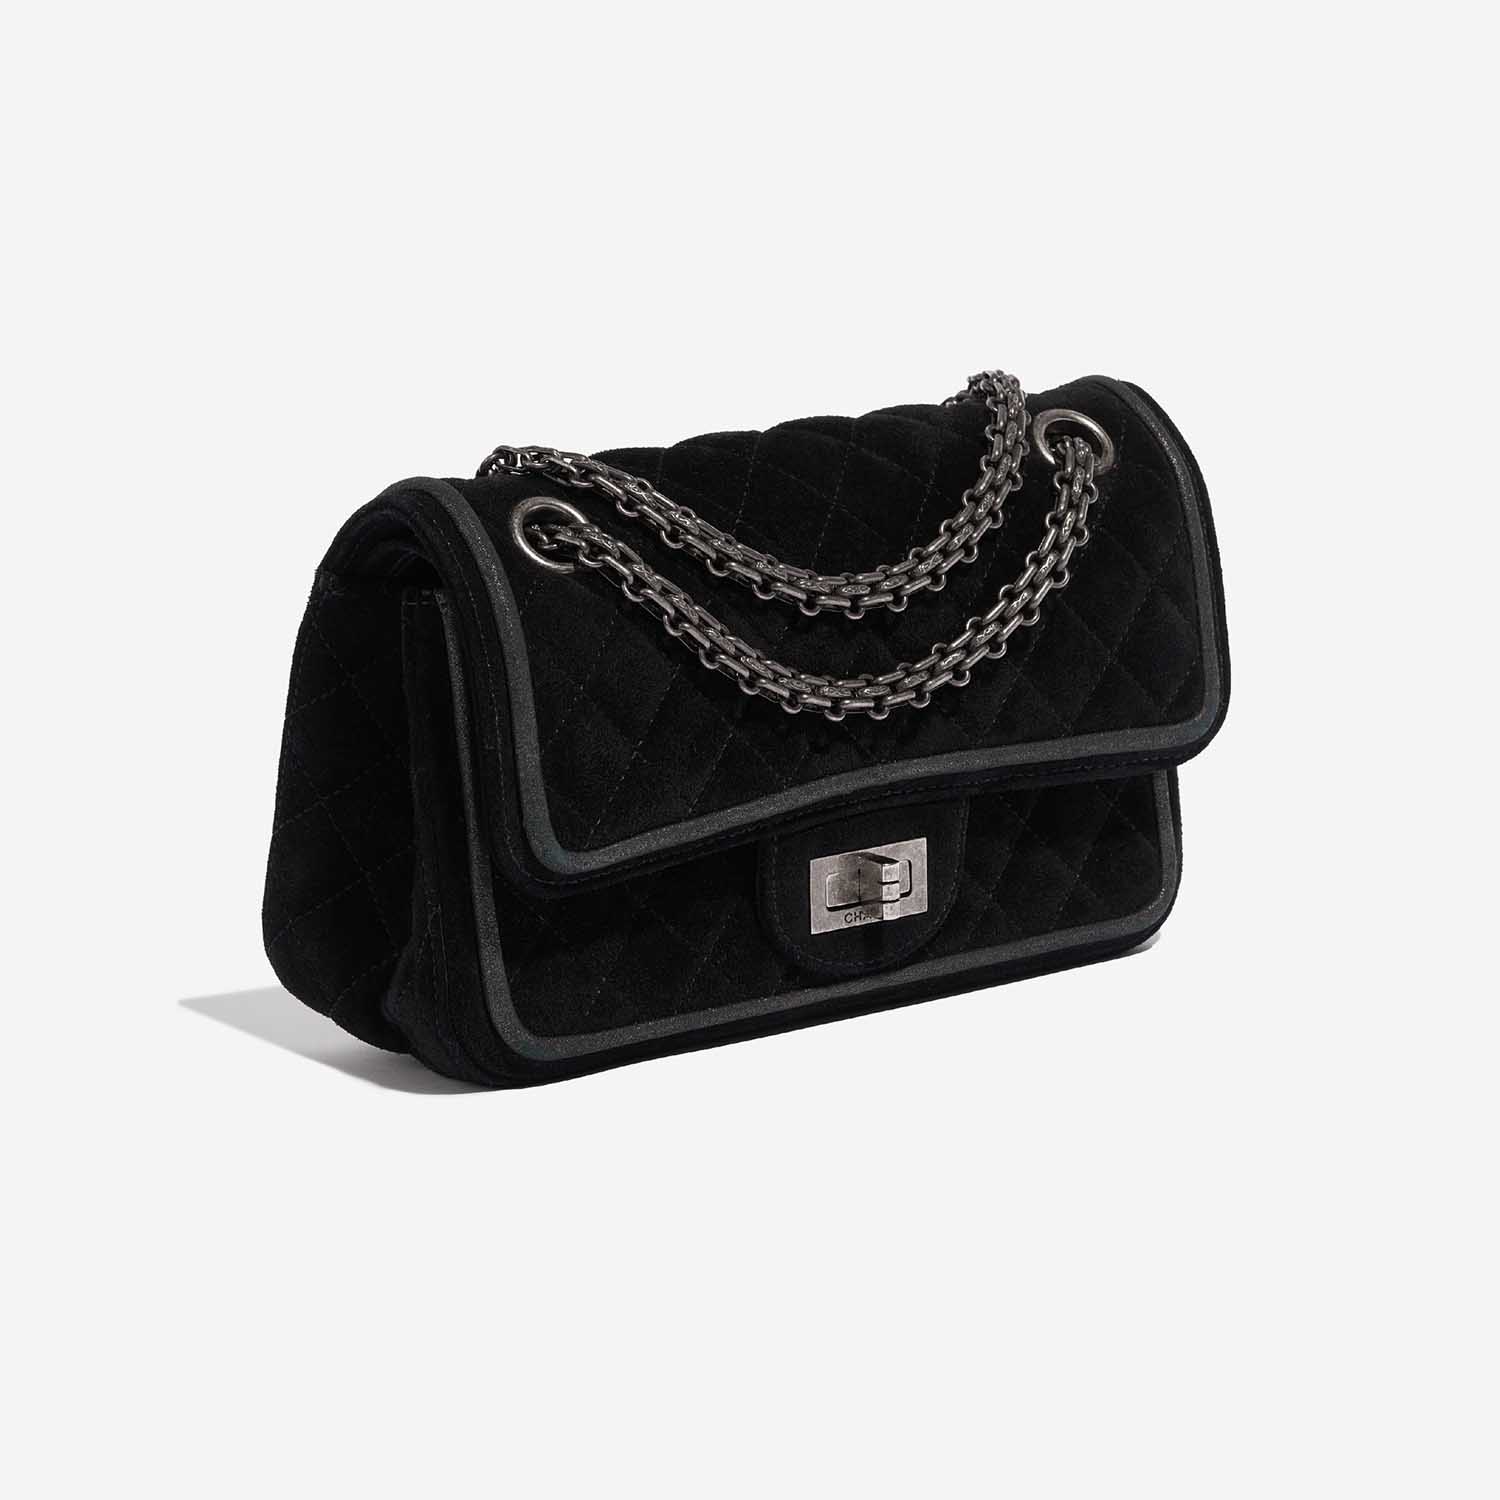 Sac Chanel d'occasion 2.55 Reissue Velvet Noir Côté Noir Devant | Vendez votre sac de créateur sur Saclab.com